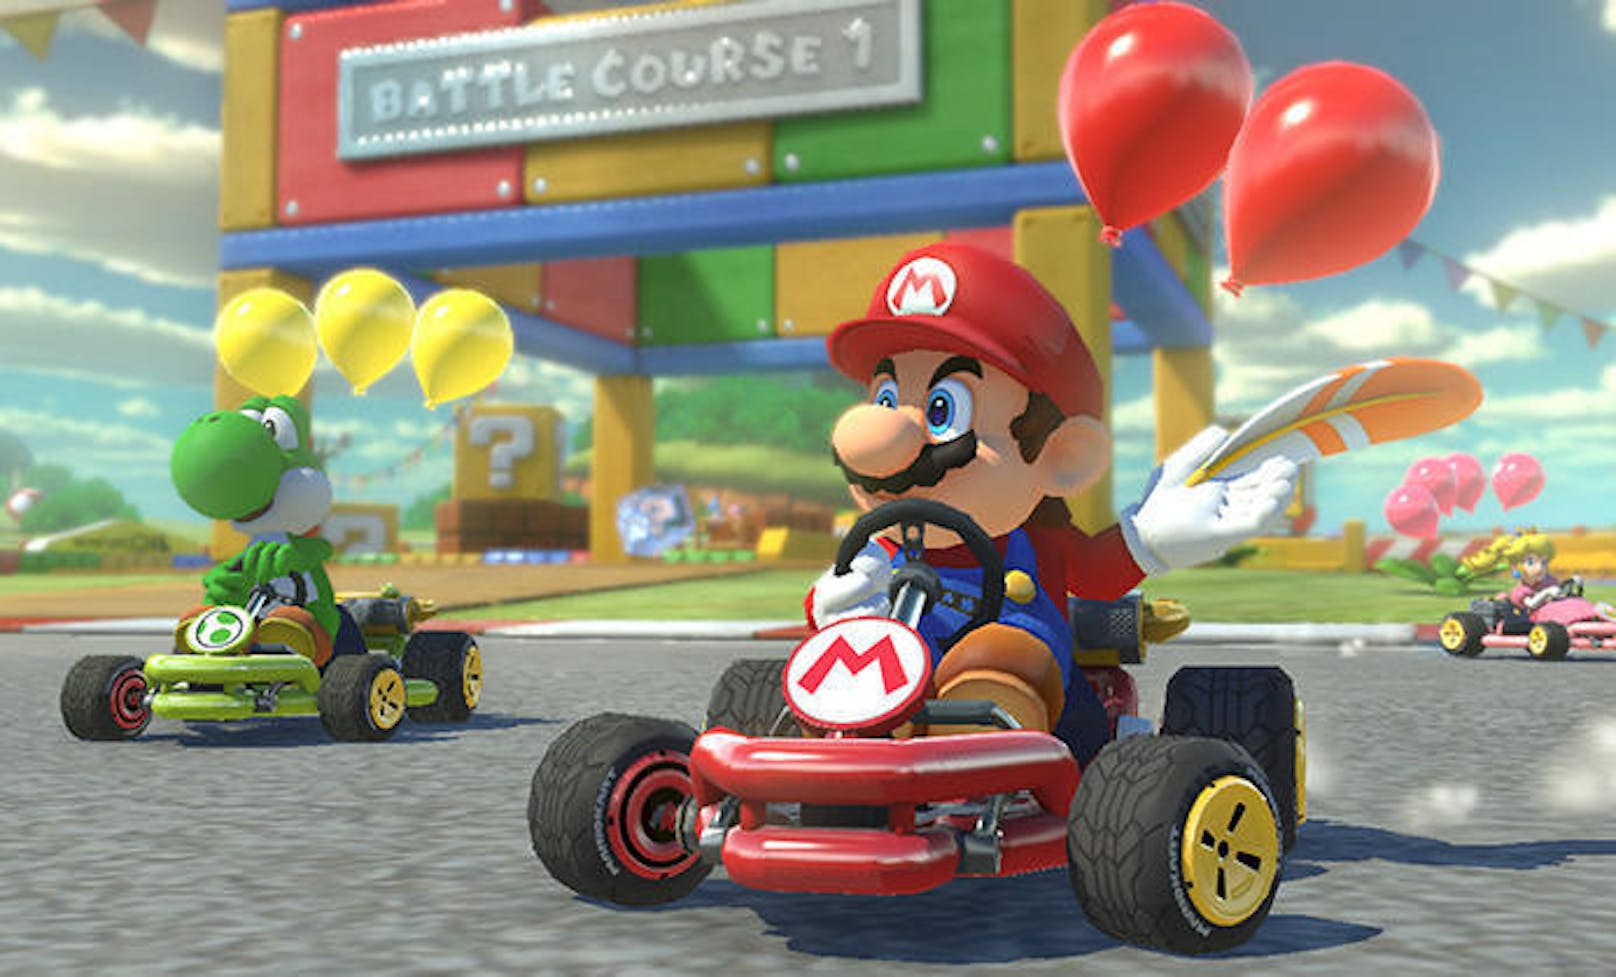 <b>01. Februar 2019:</b> Nintendo hat schon vor rund einem Jahr das Spiel "Mario Kart Tour" für Smartphones angekündigt. Eigentlich sollte dieses im März 2019 erscheinen. Laut Theverge.com wurde der Release nun auf den Sommer verschoben. Wenn es nach einem Zitat des Erfinders der Mario- und Zelda-Figuren, Shigeru Miyamoto, geht, ist die Verzögerung aber nicht unbedingt negativ: "Ein zu spät kommendes Spiel ist letztendlich gut, aber ein zu schnell produziertes Spiel ist für immer schlecht."